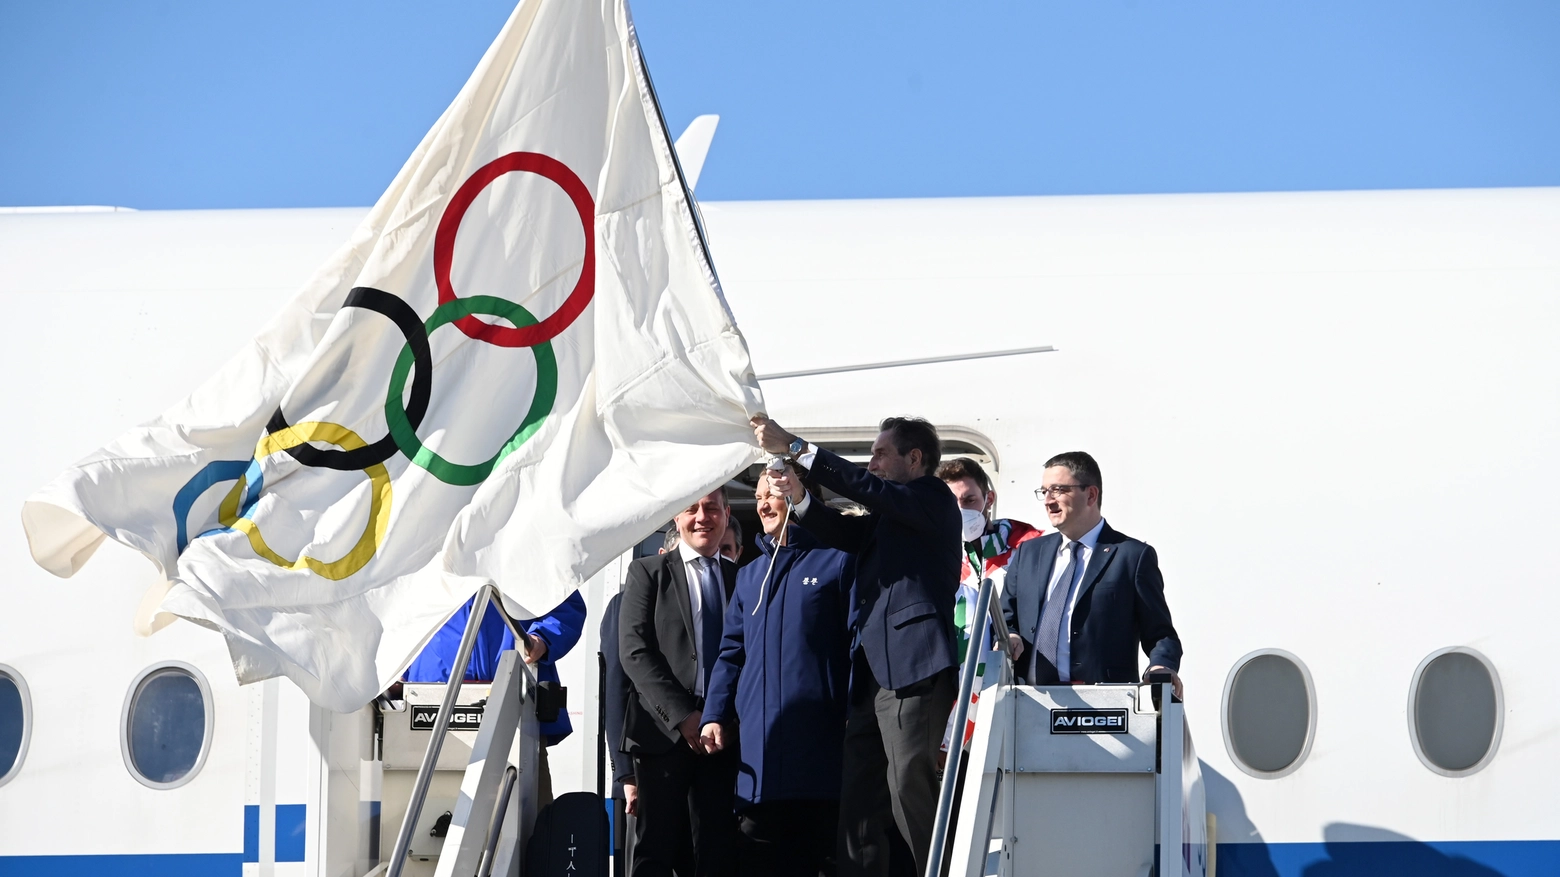 L'arrivo della bandiera olimpica a Milano